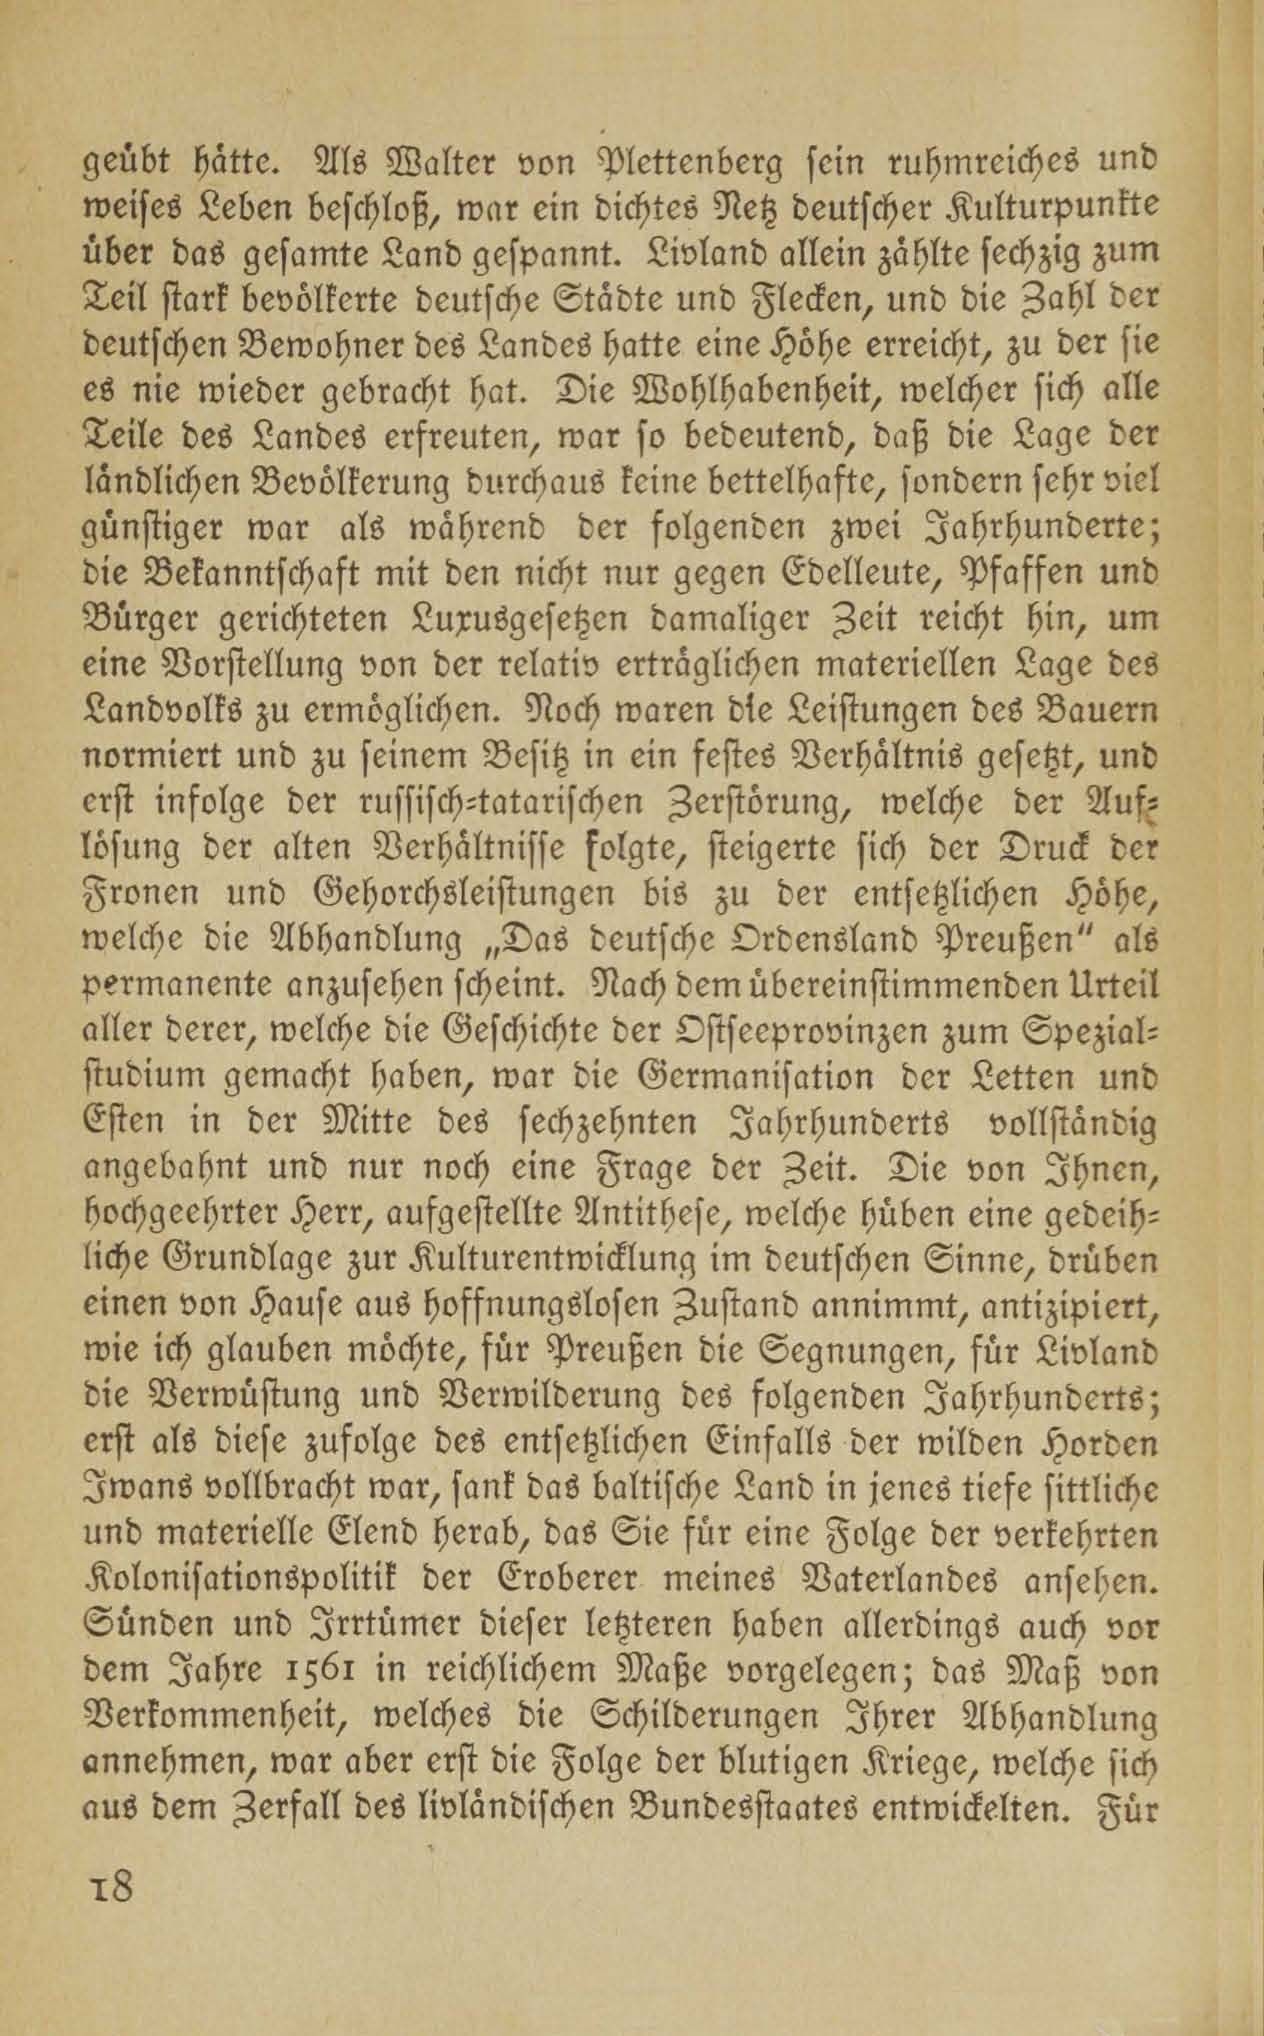 Baltische Briefe aus zwei Jahrhunderten (1917 ?) | 13. (18) Main body of text